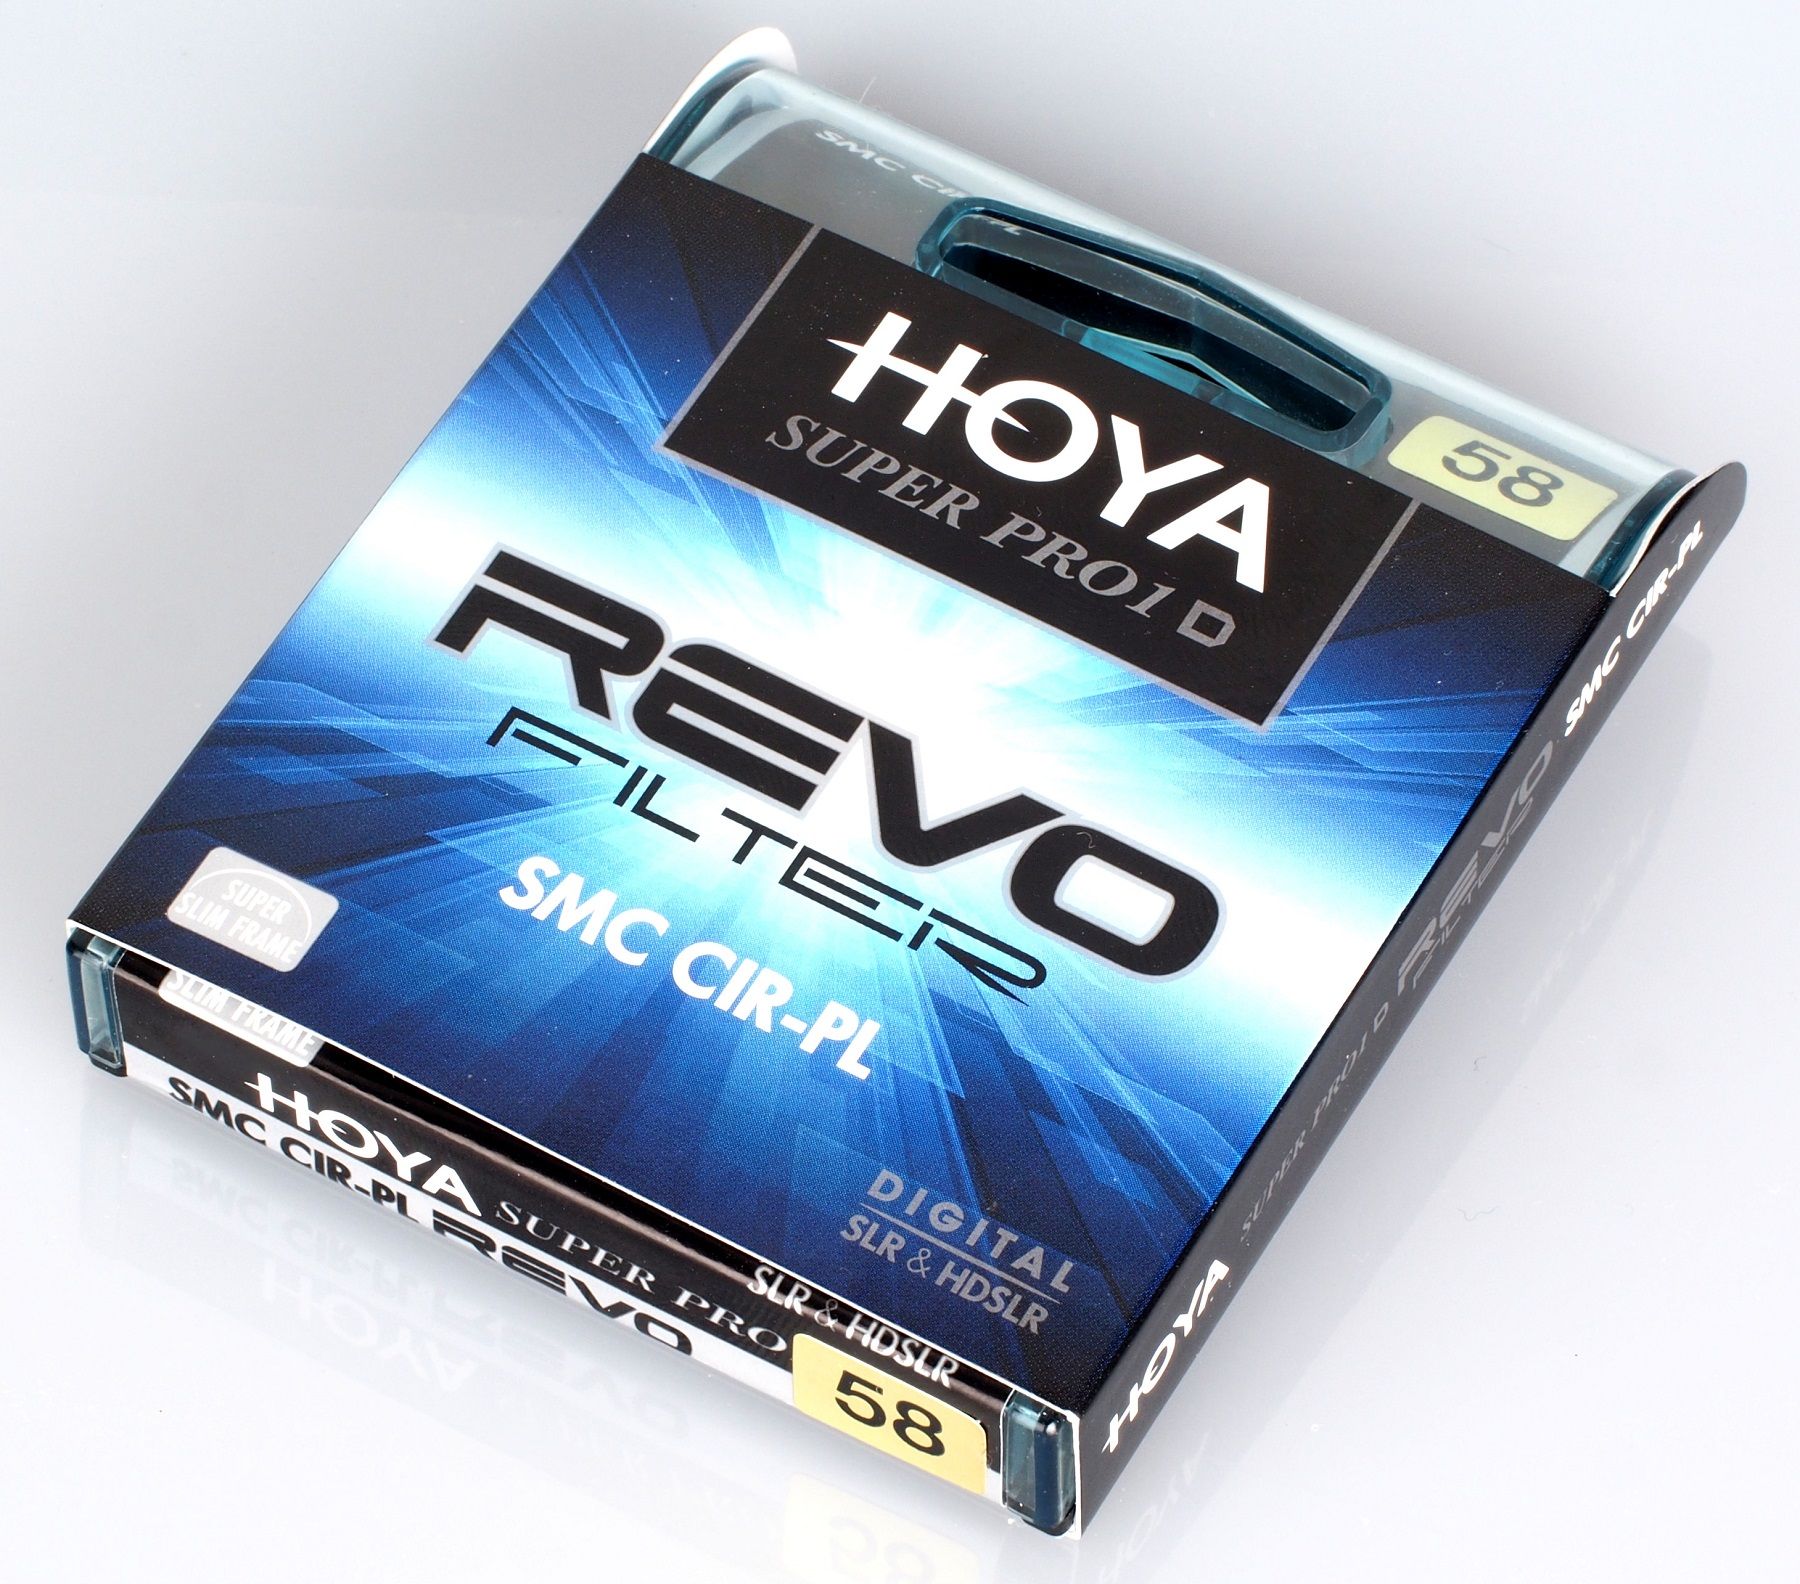 Highres Hoya Super Pro1 D Revo Filter Smc Cir Pl 5 Jpg 1376495015